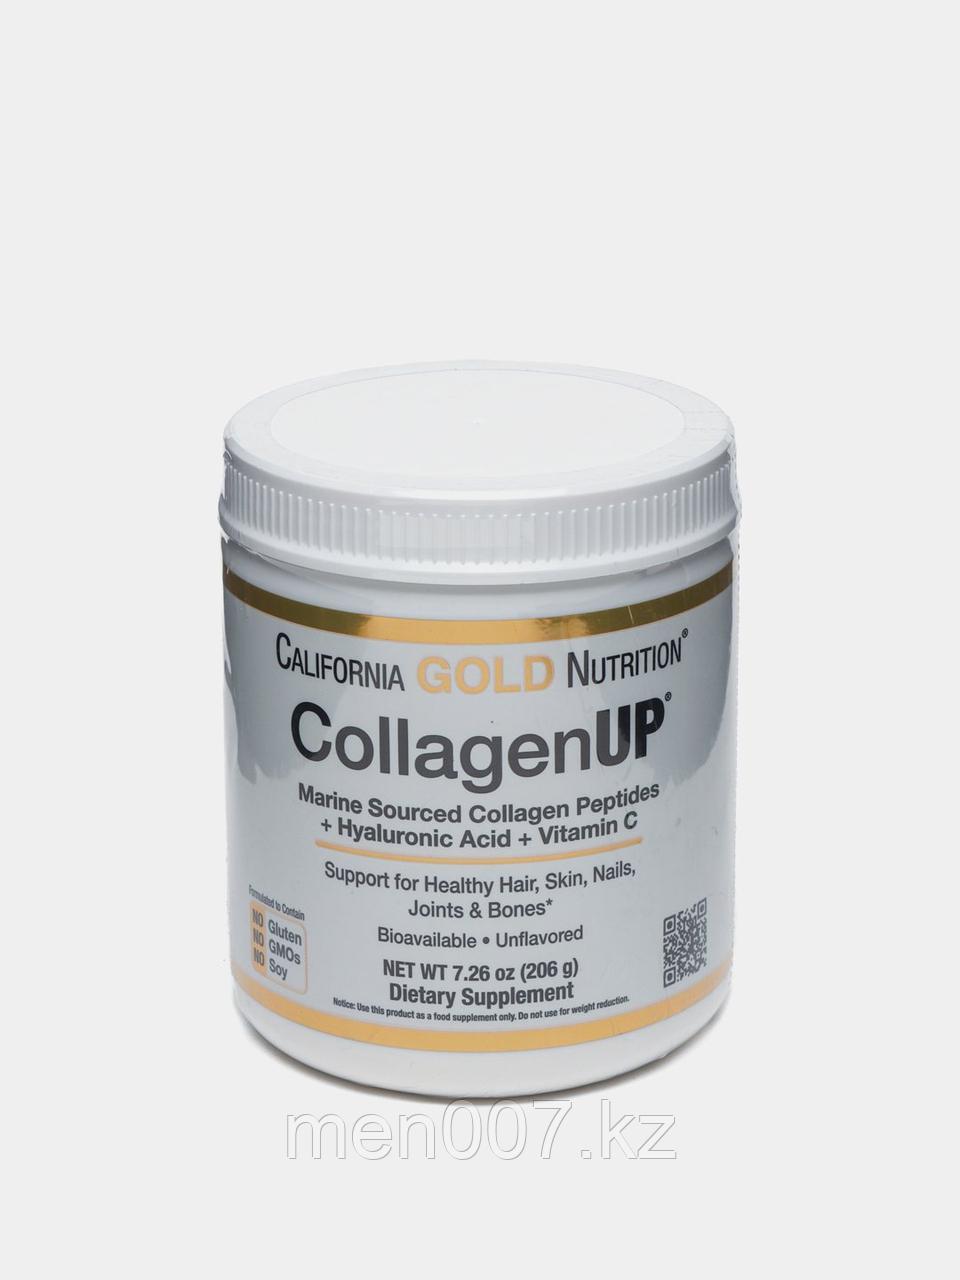 БАД CollagenUP, морской гидролизованный коллаген, гиалуроновая кислота и витамин C (206 г) California Gold